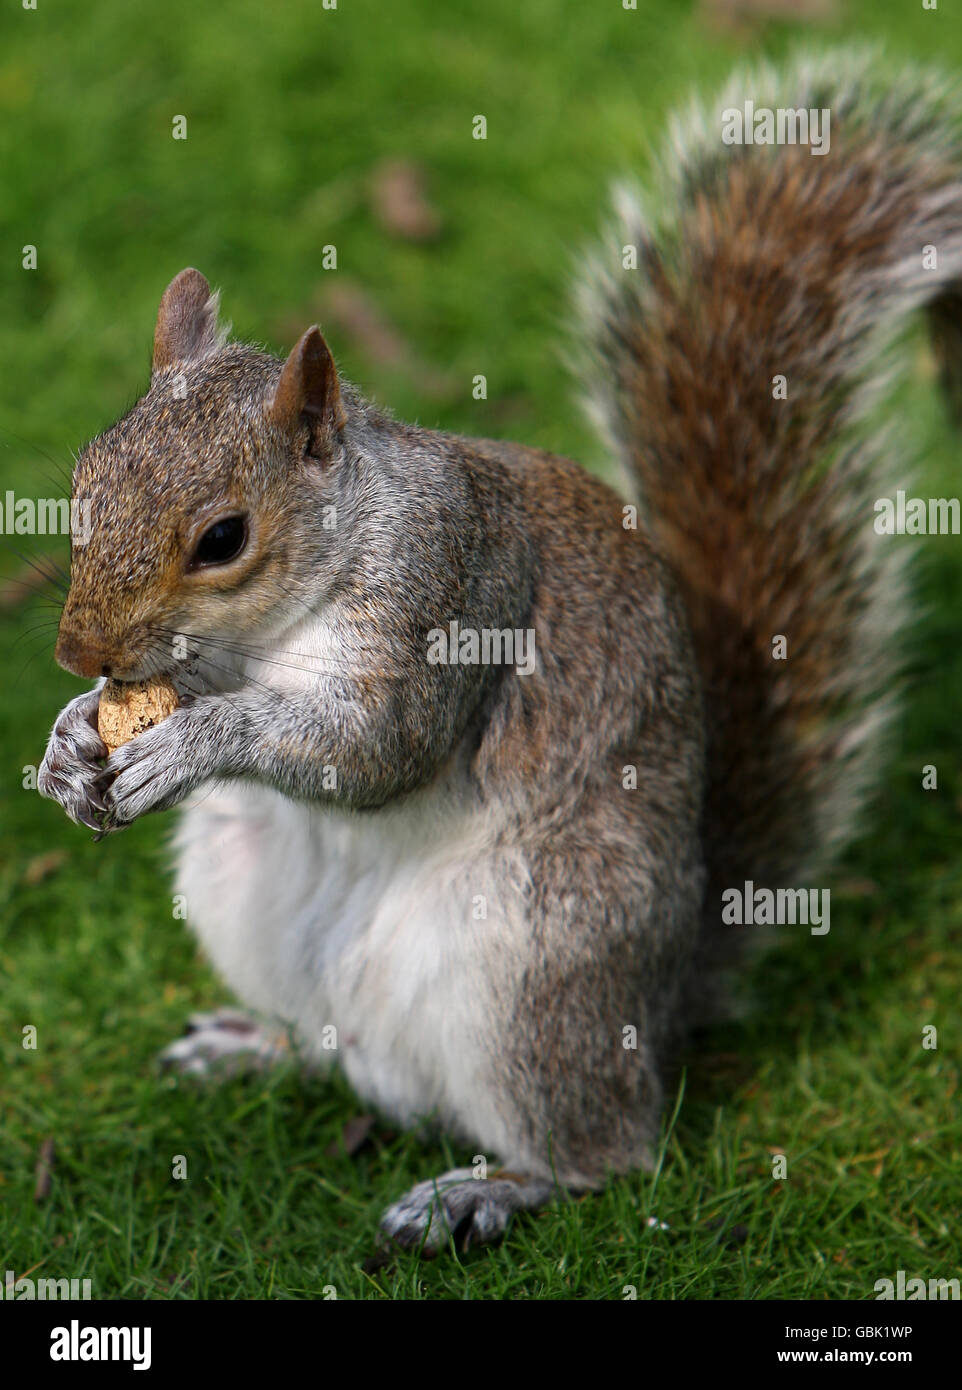 Magazzino Generale - scoiattolo grigio Foto Stock